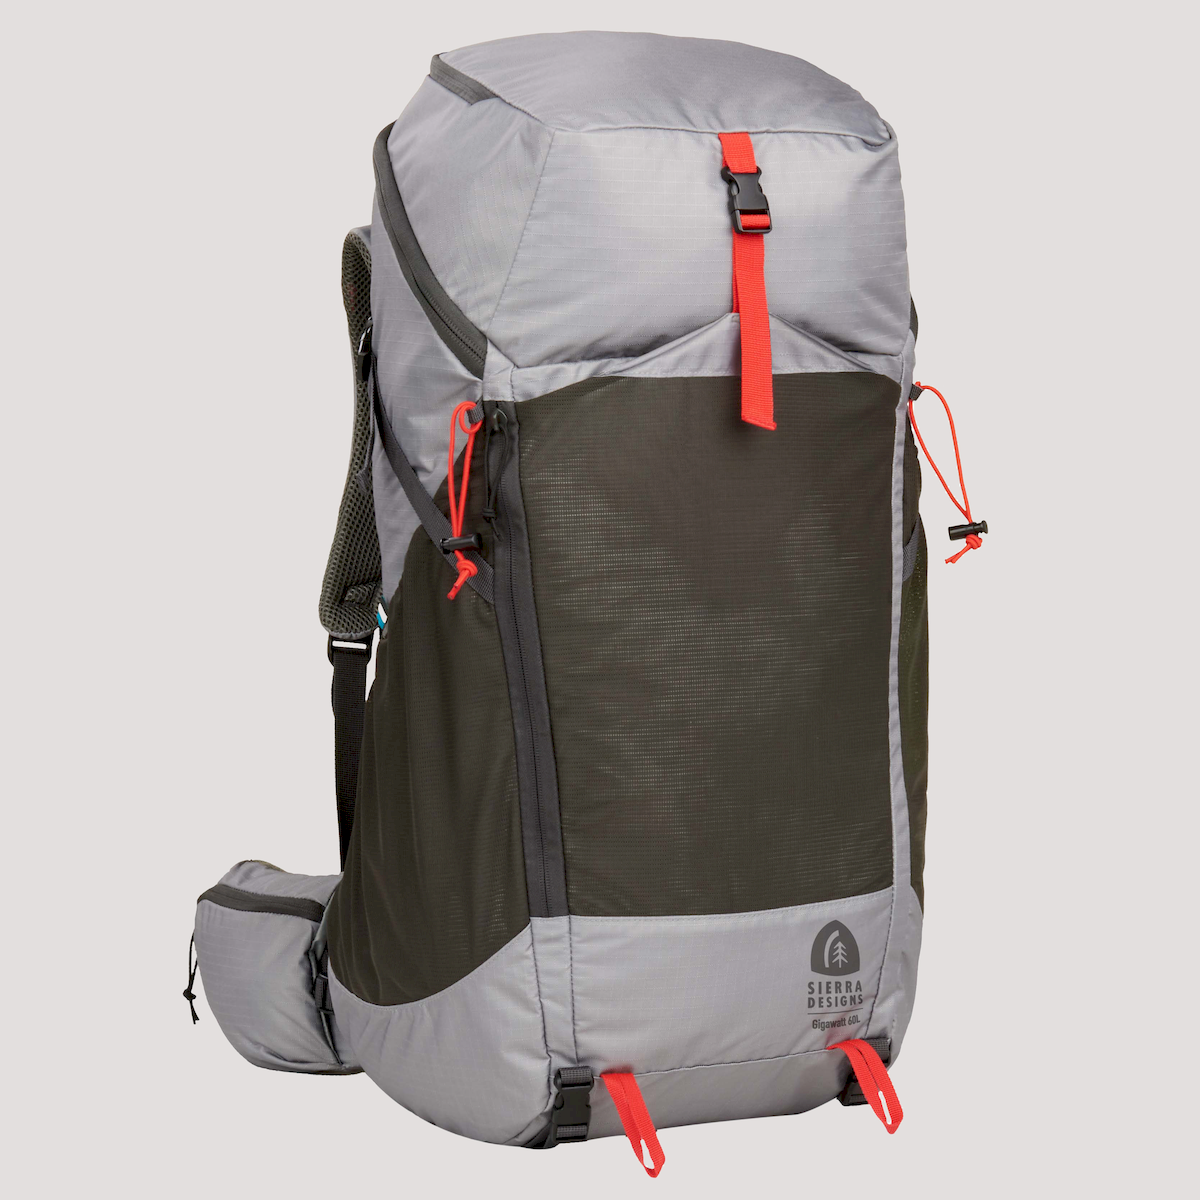 Sierra Designs Gigawatt 60 - Hiking backpack